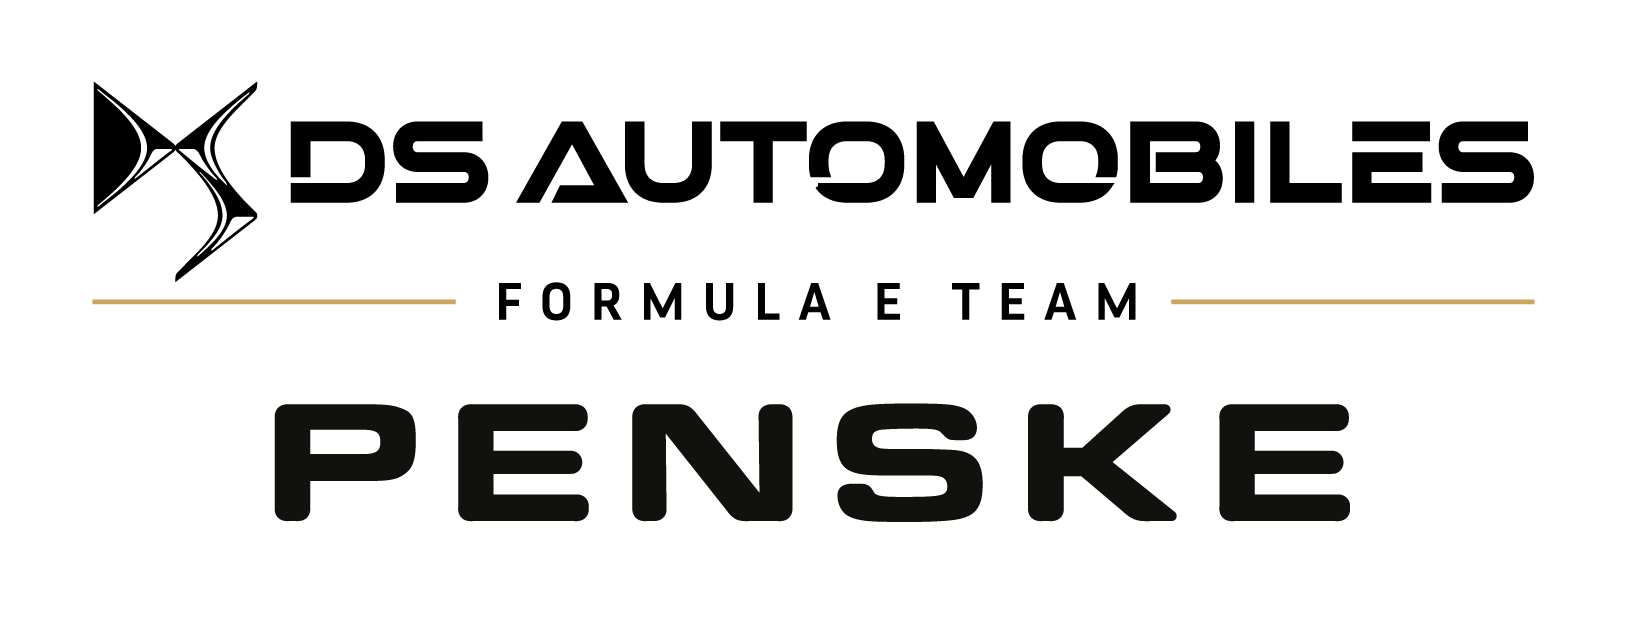 DS Penske Formule E Merchandise Logo